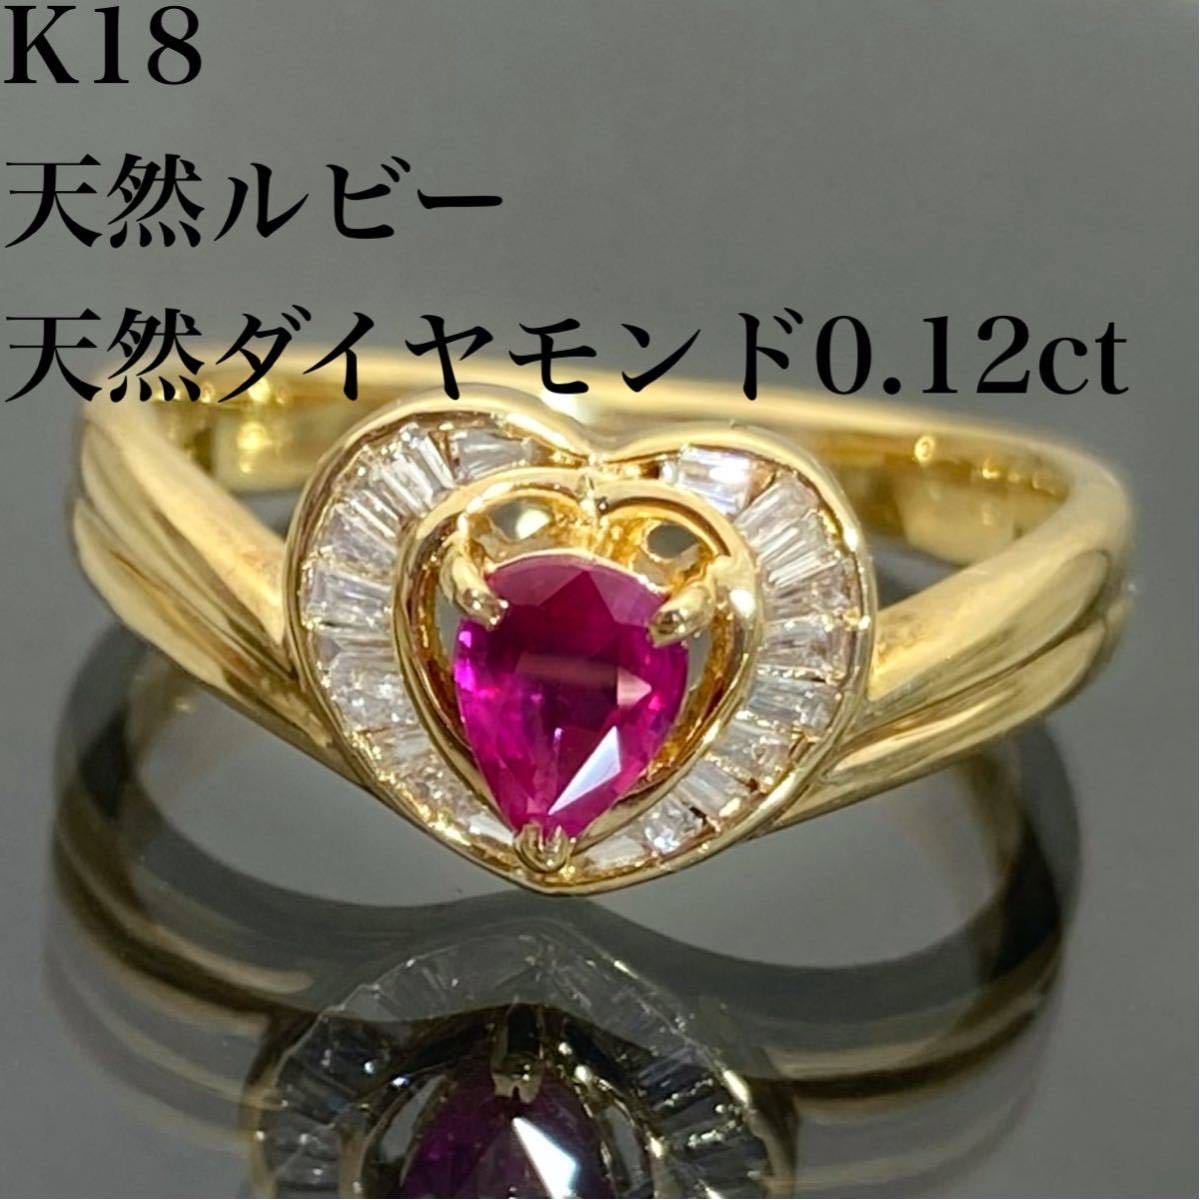 NEW限定品】 美品 K18WG ルビー計0.70ct ダイヤ計0.37ct リング 指輪